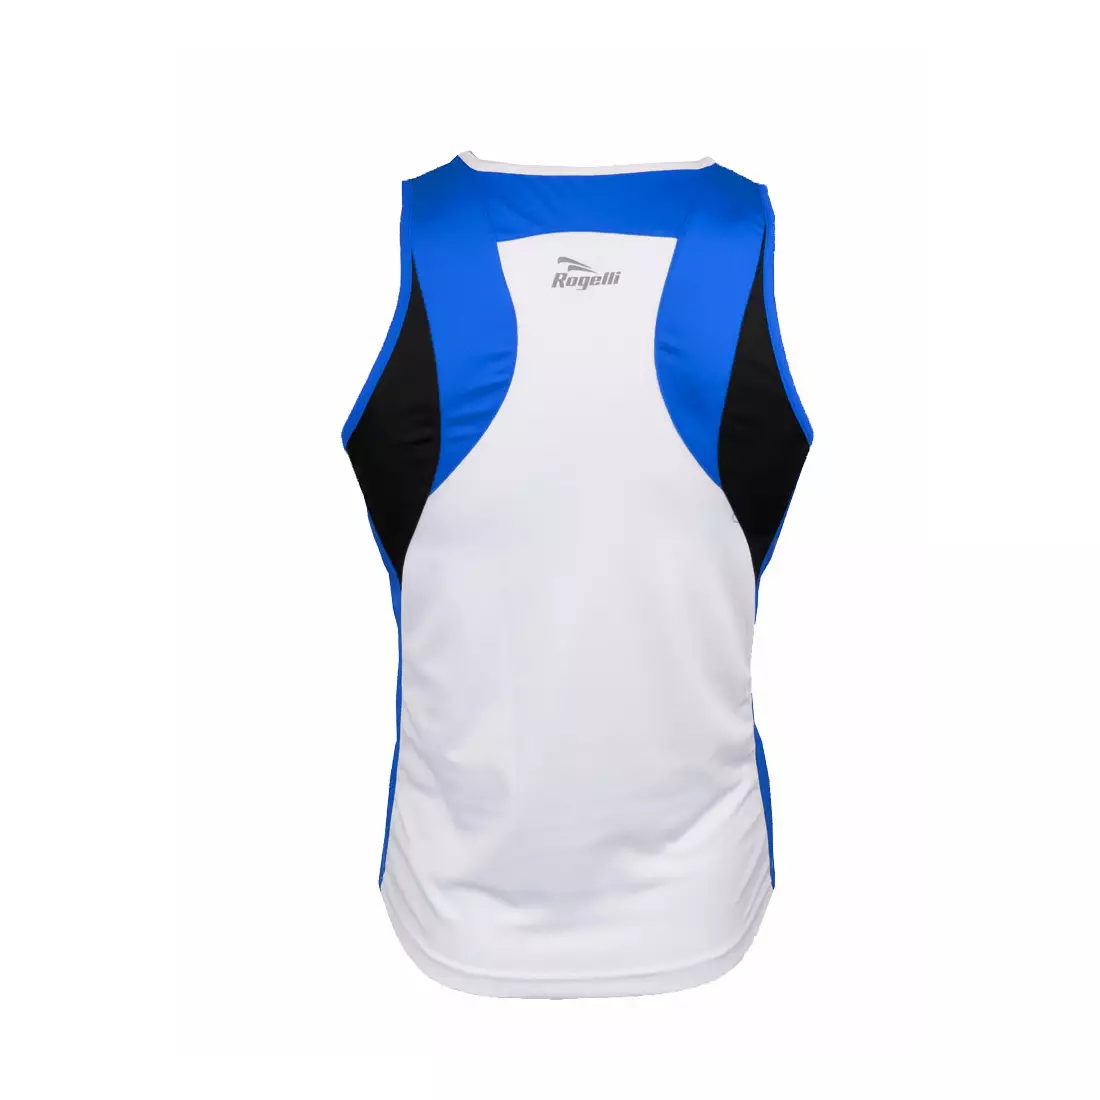 ROGELLI RUN DARBY - ultraľahké pánske športové tričko bez rukávov